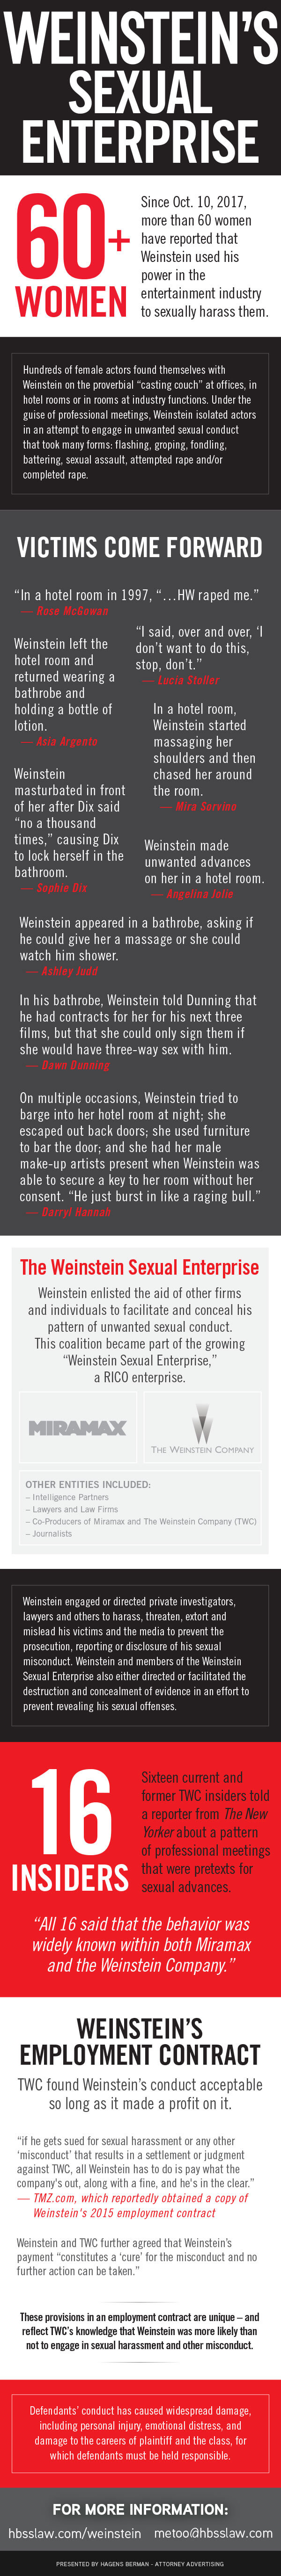 Harvey Weinstein Infographic